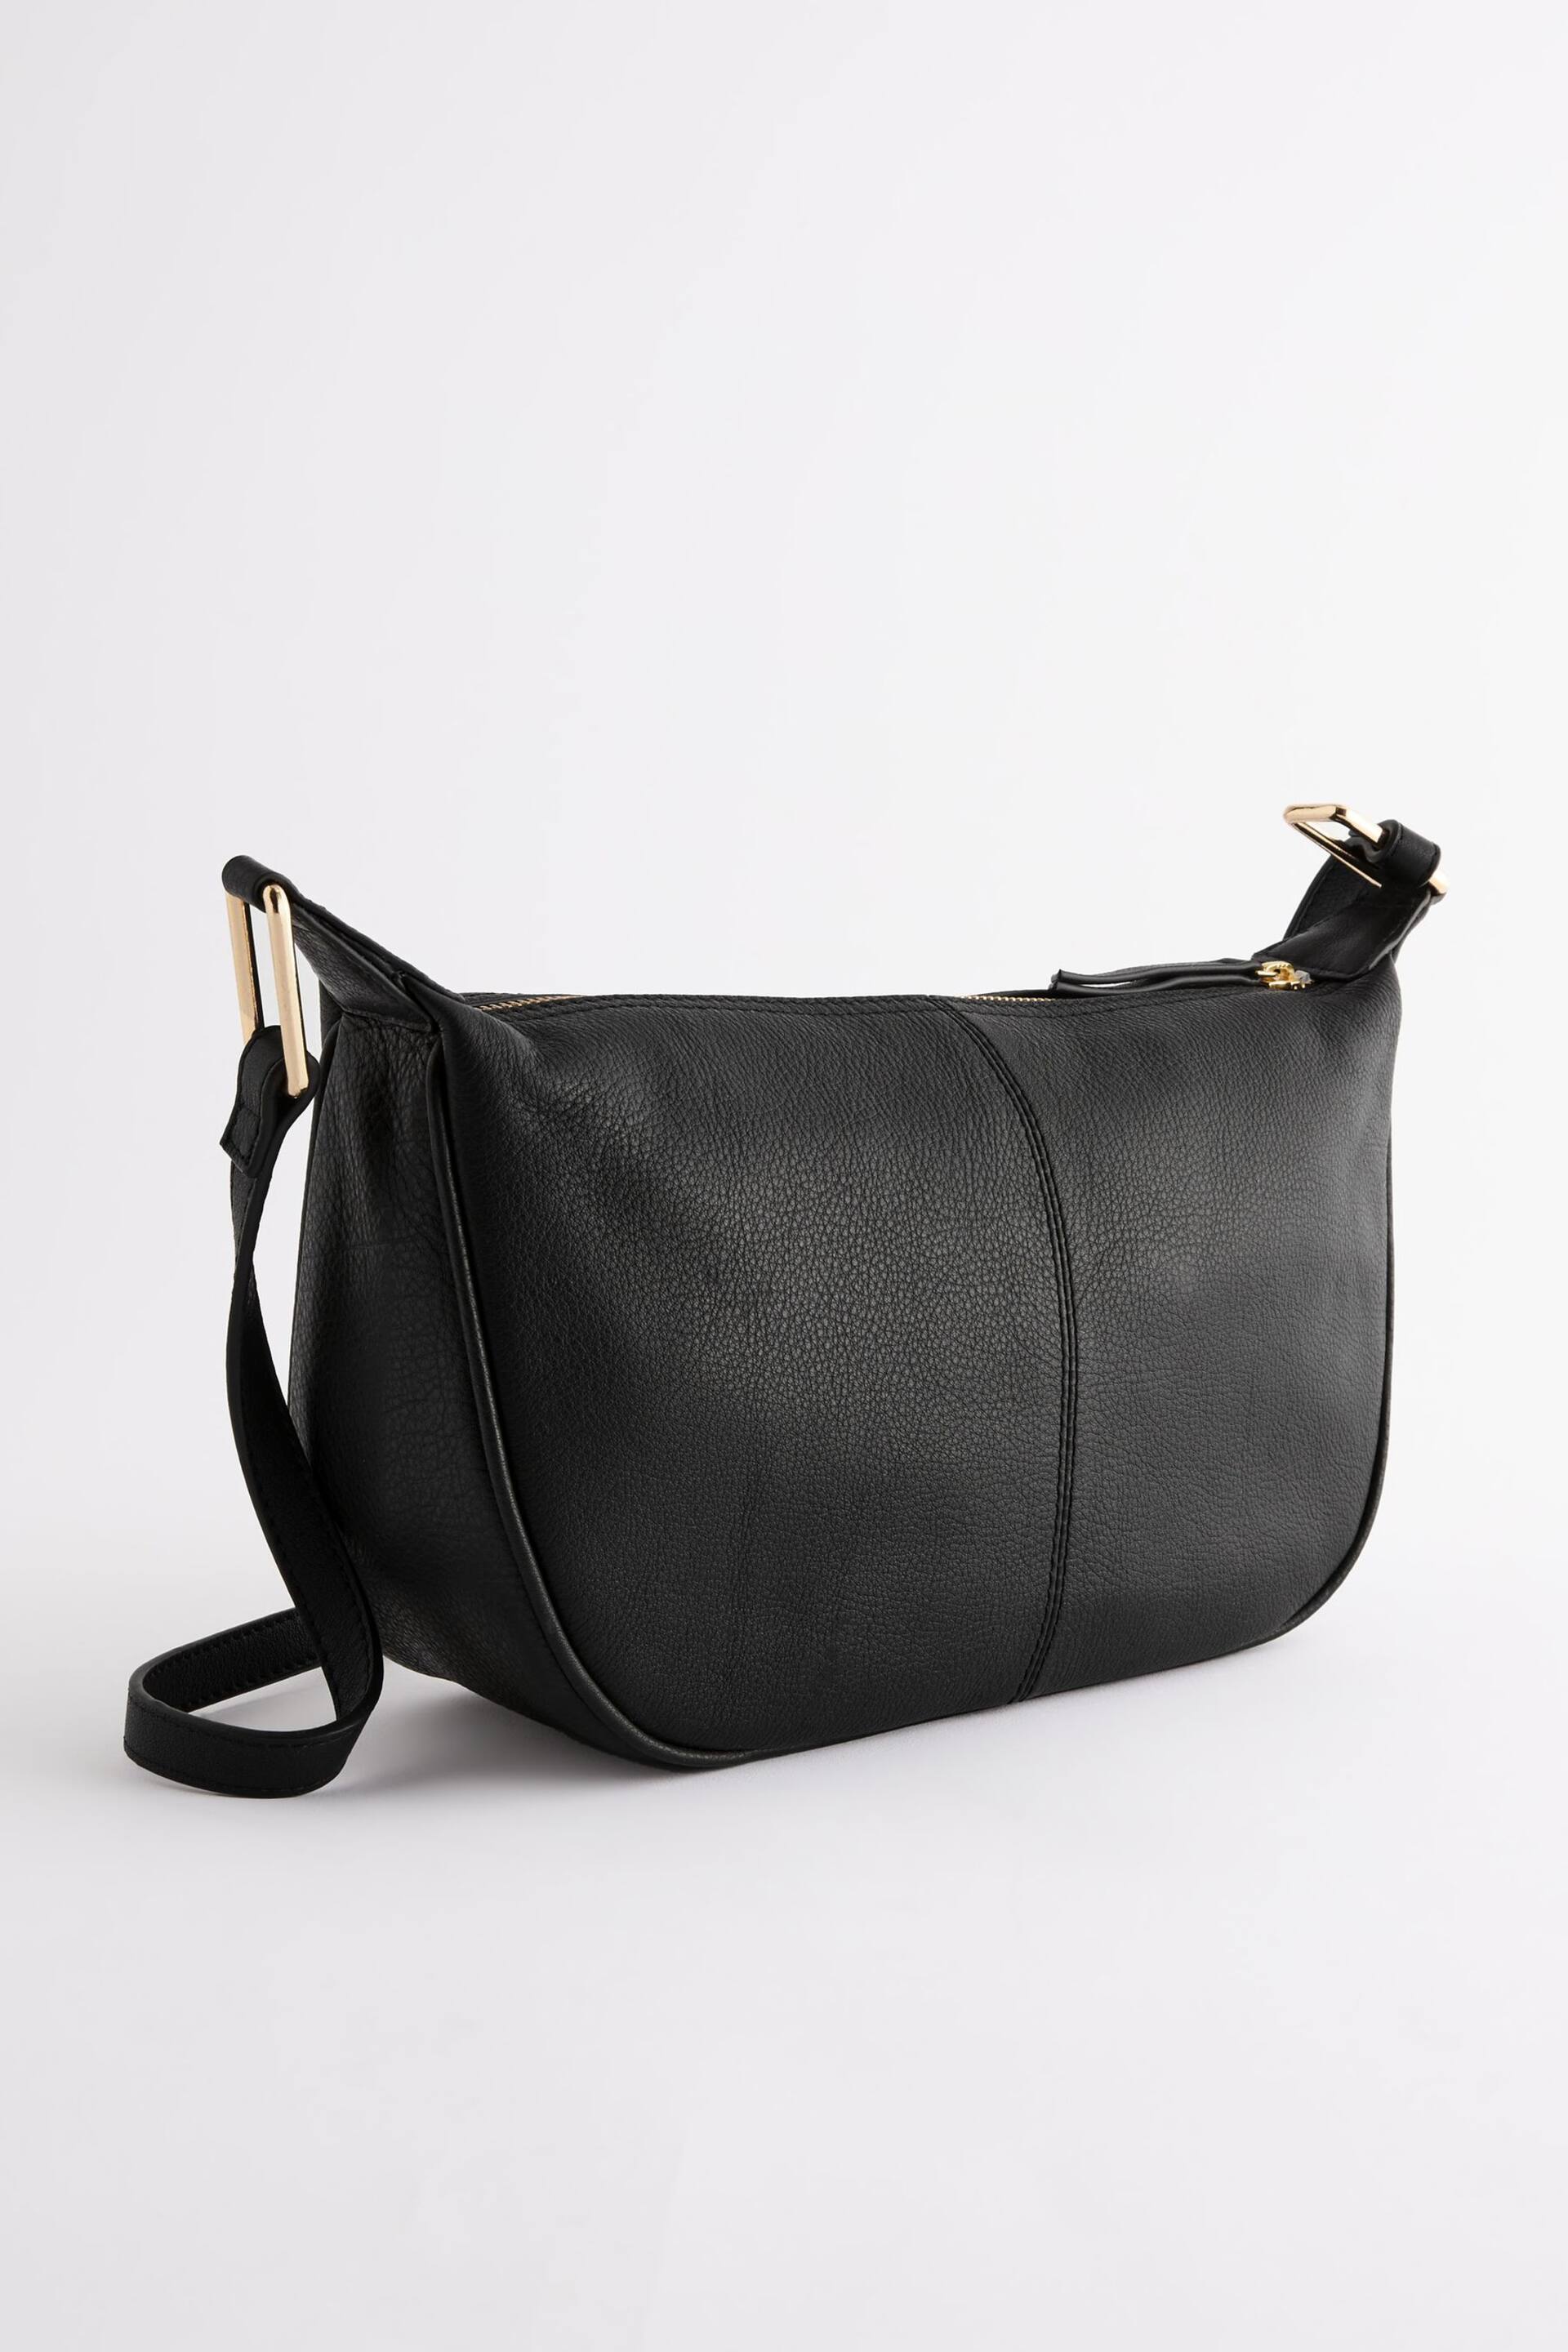 Black Leather Sling Bag - Image 7 of 10